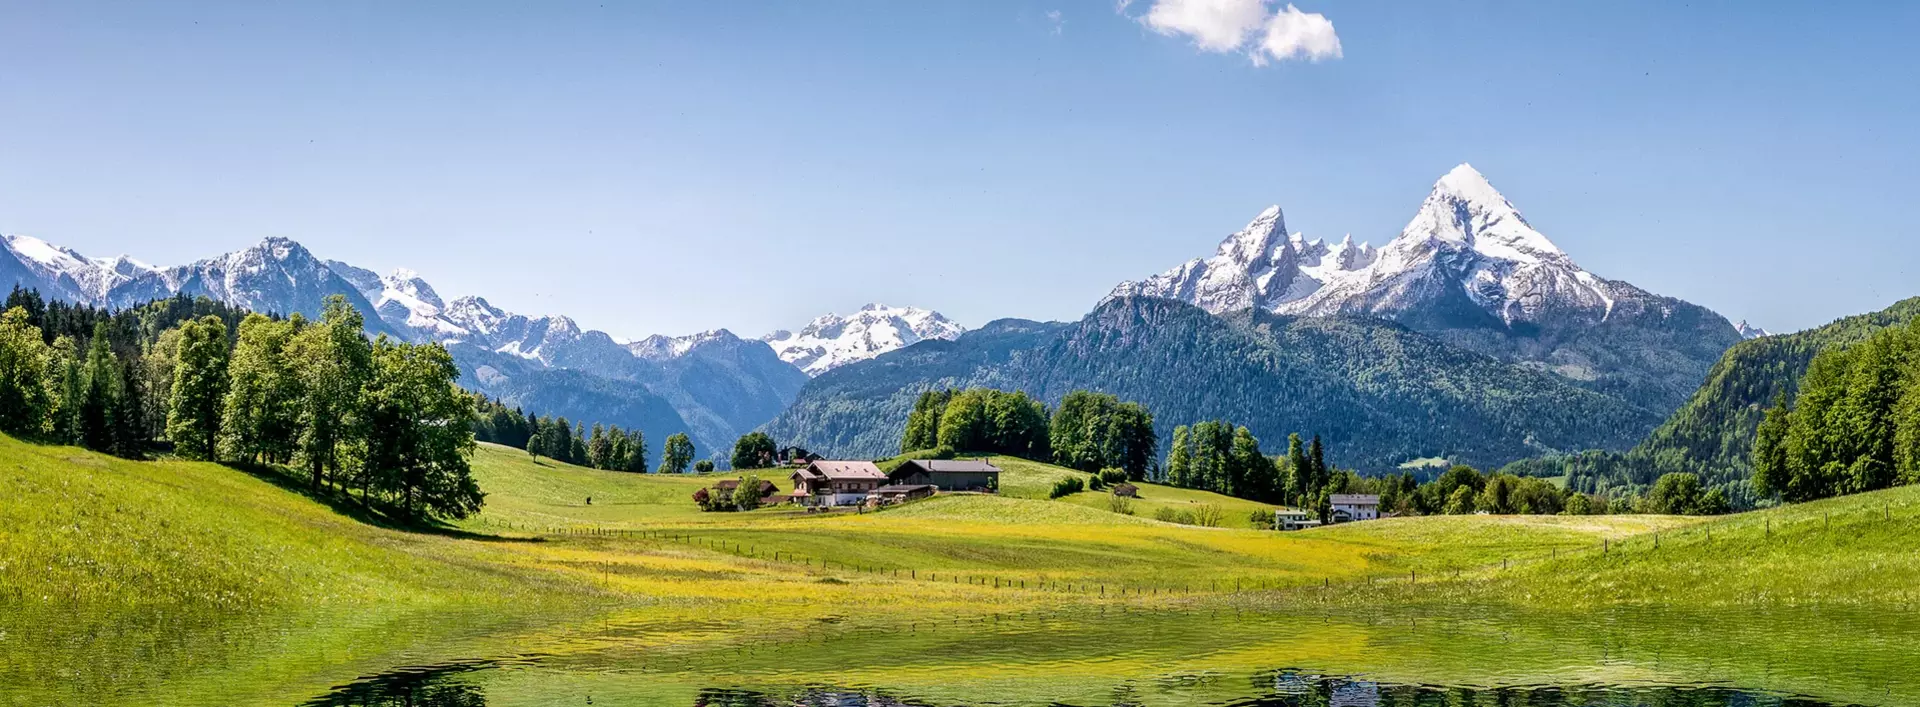 Urlaub in Bayern auf dem Bauernhof oder Landhof machen